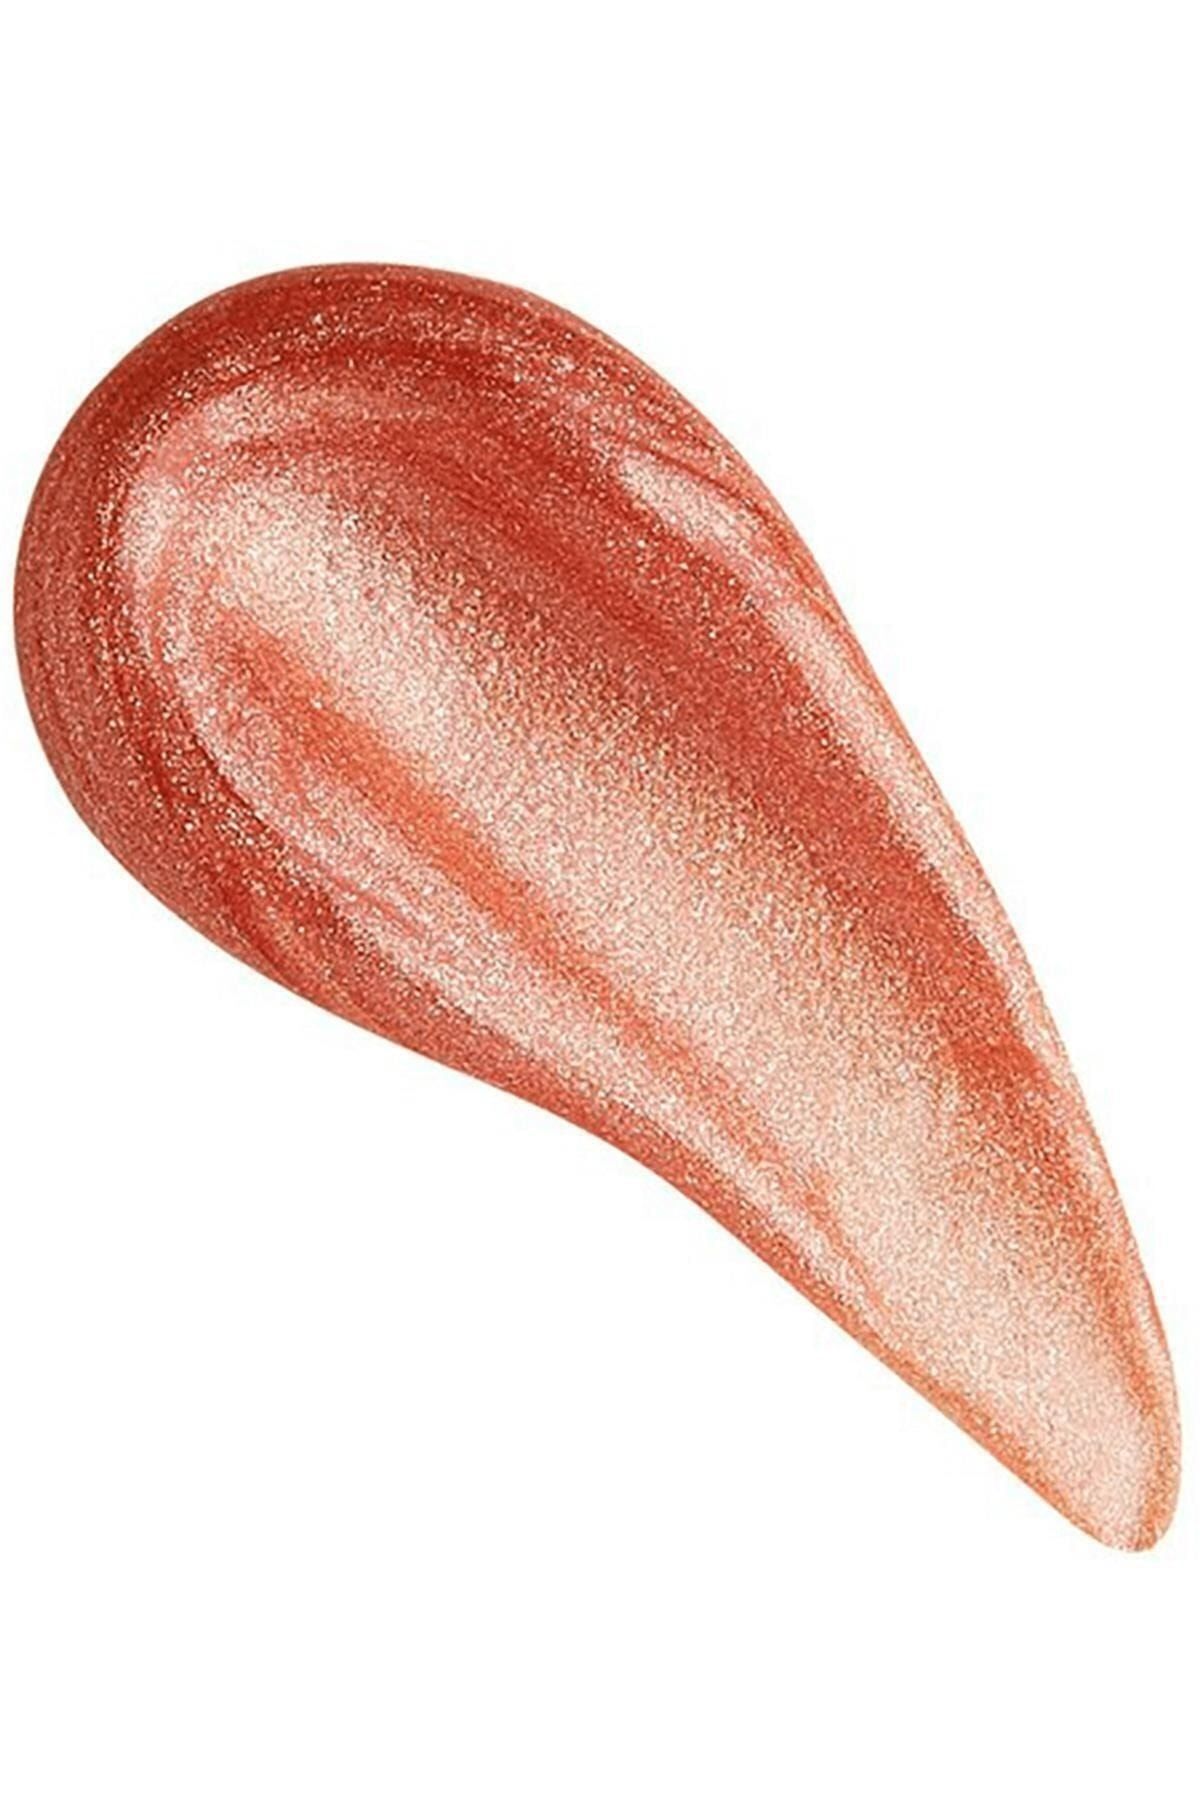 Revolution Shimmer Bomb Lipgloss: Starlight (vitamin E)